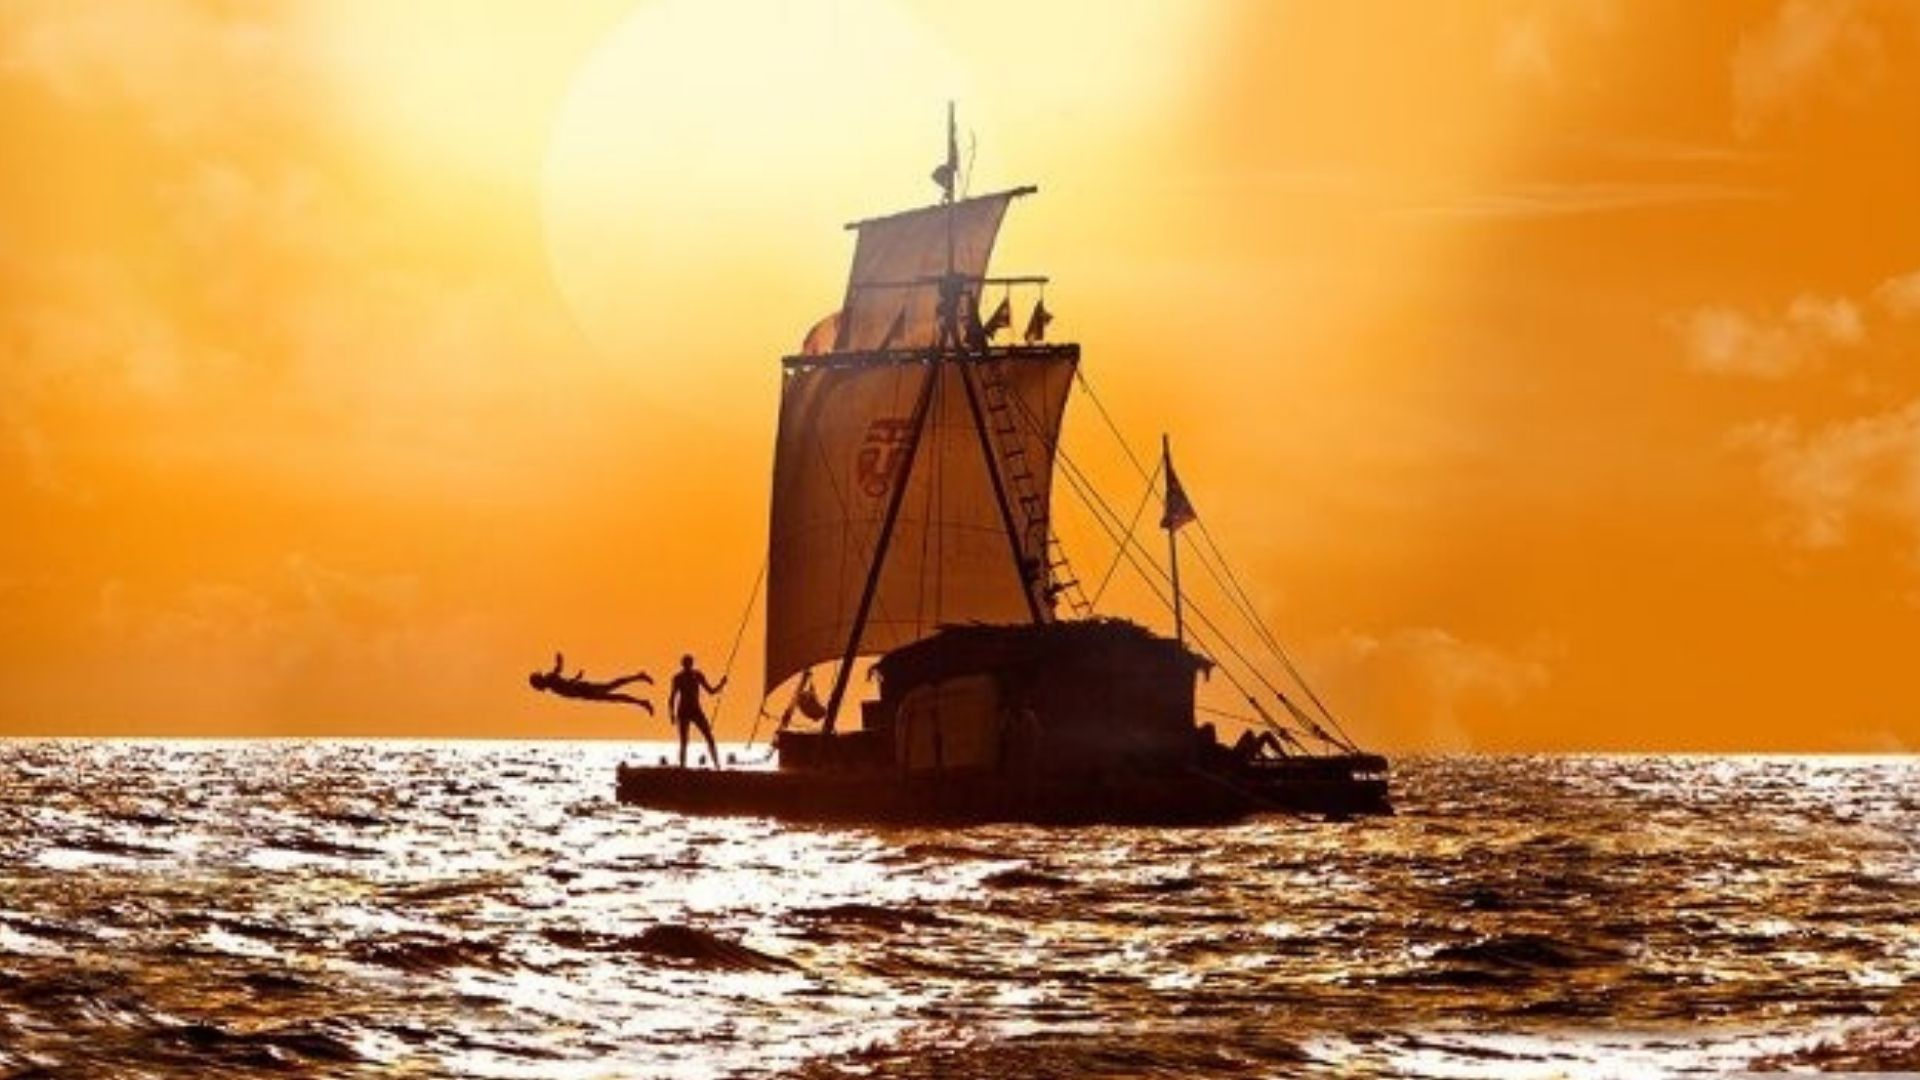 Обзор фильма “Кон-Тики” про знаменитую экспедицию Тура Хейердала и его команды на плоту через Тихий океан